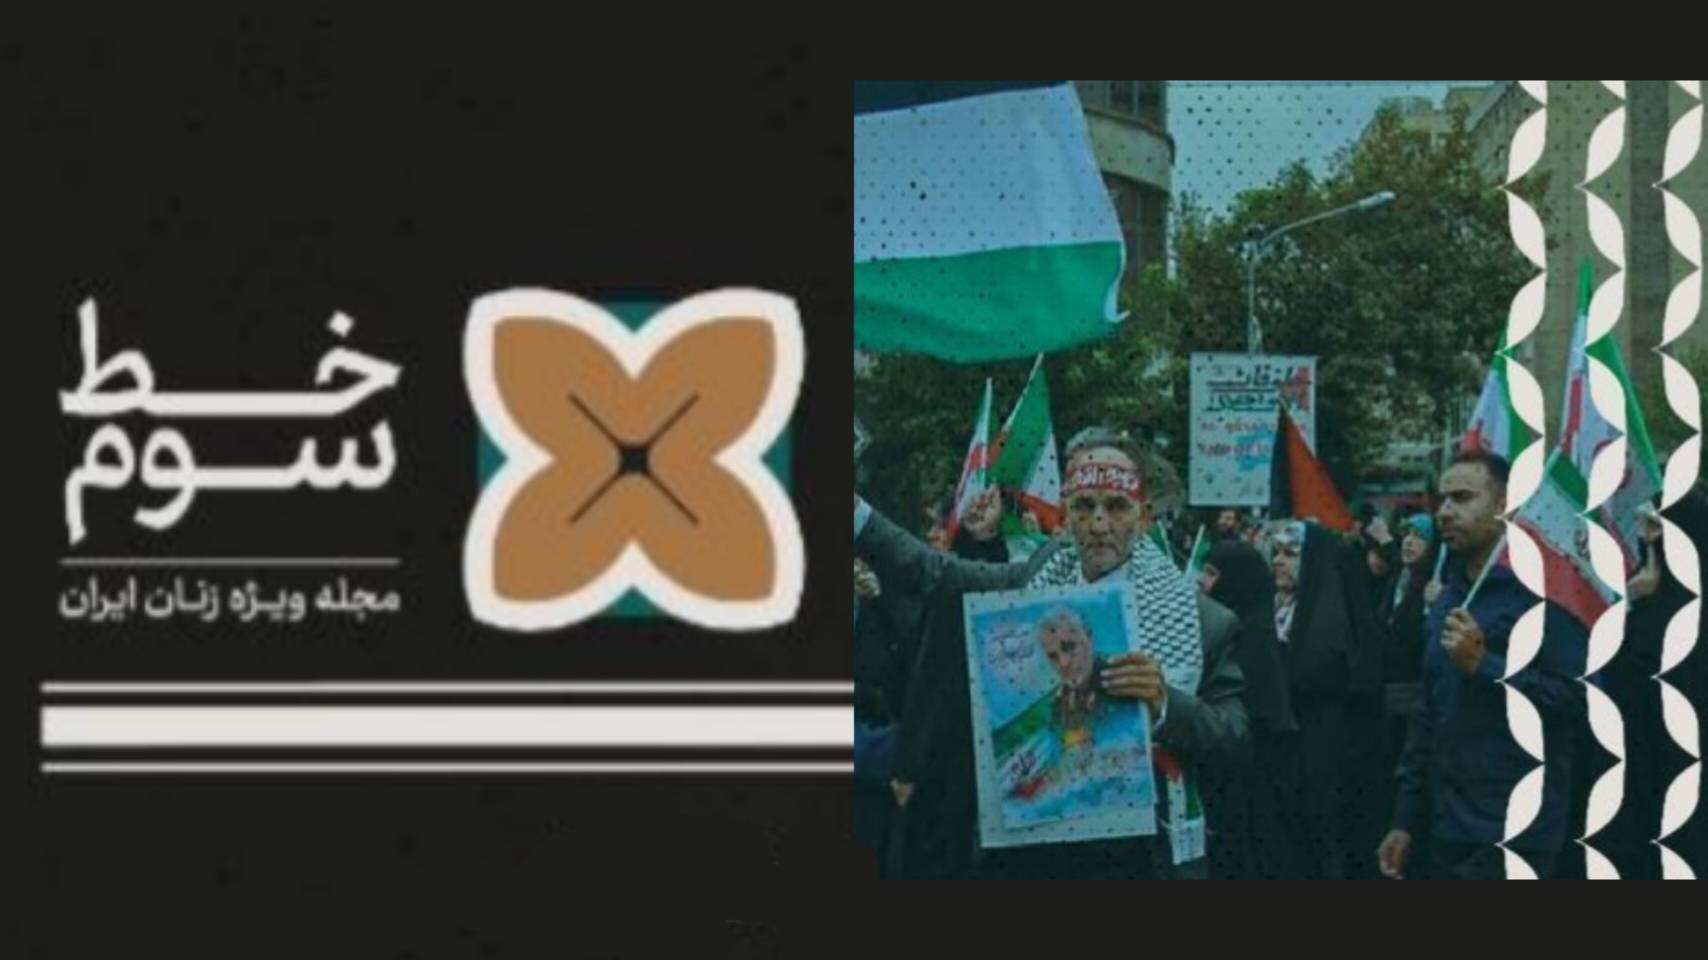 مروری بر ادامه بحث اتحاد علیه تعلیق زندگی در «خط سوم»